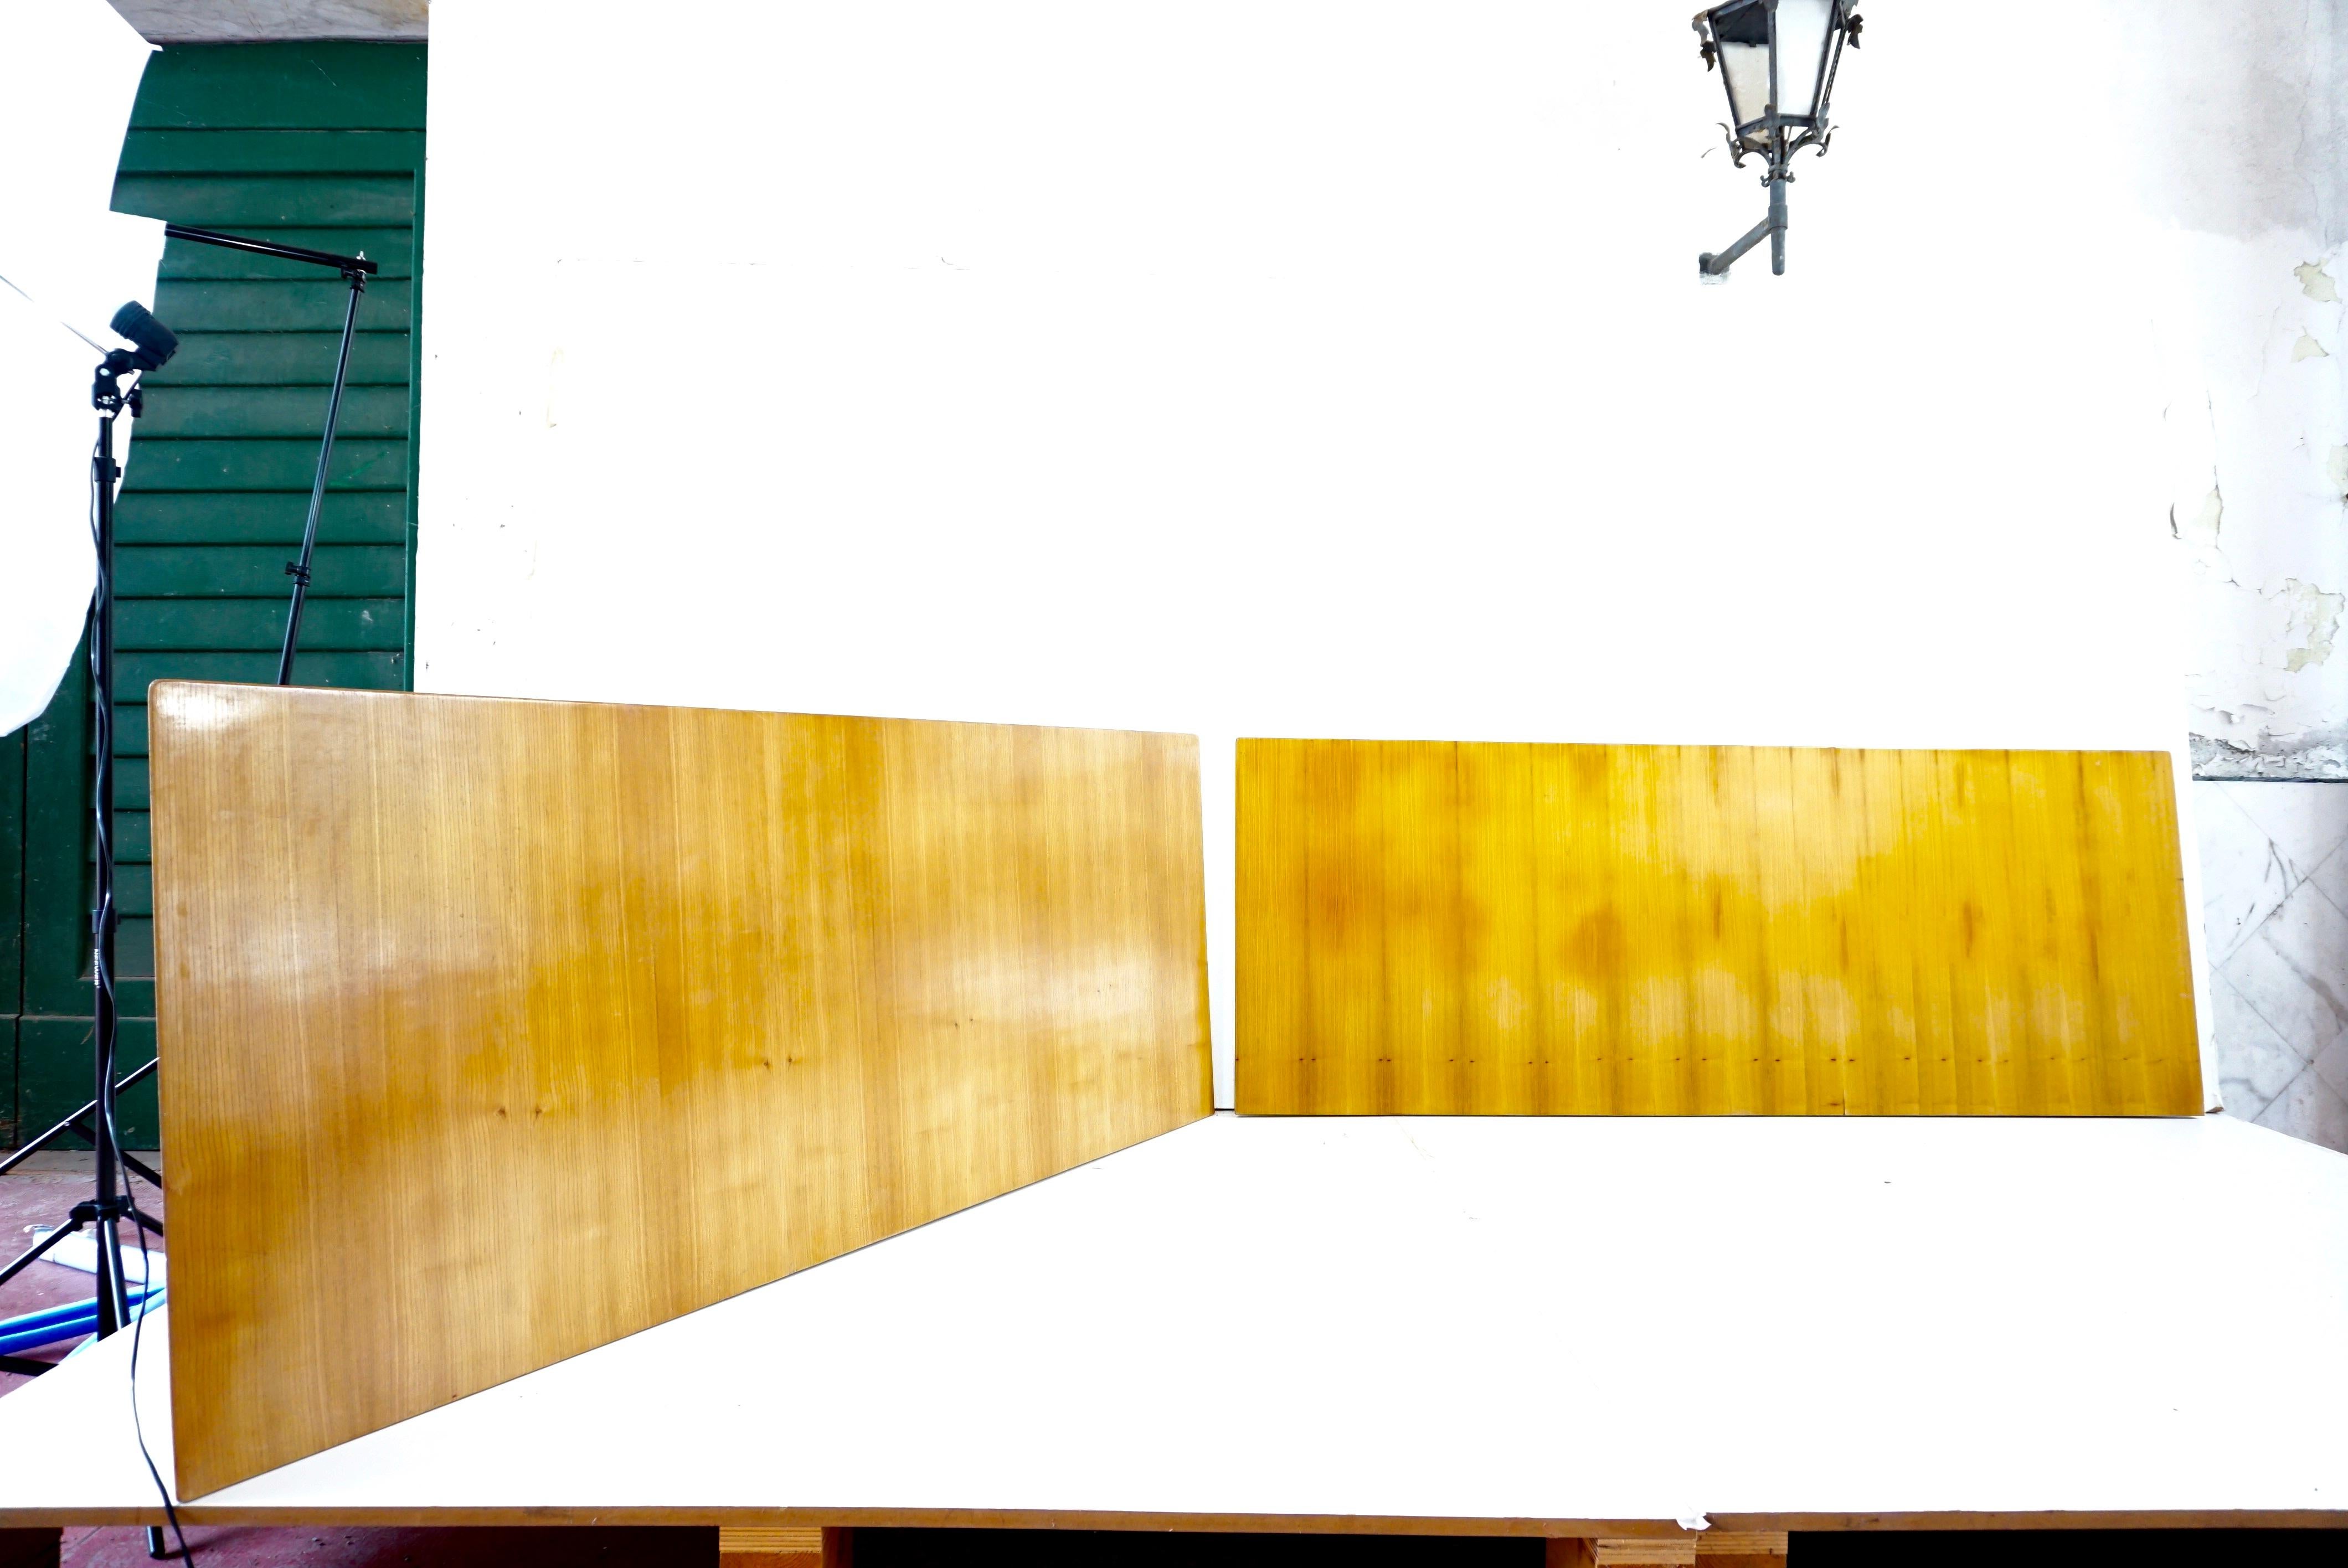 Ein Paar einzigartiger Holzpaneele von Gio Ponti aus der Einrichtung des Hotel Royal in Neapel, 1955.
Hergestellt von Giordano Chiesa by Dassi.
kirschbaum
dicker Rand mit Eulenschnabel
diese Stücke stammen aus der ursprünglichen Einrichtung der